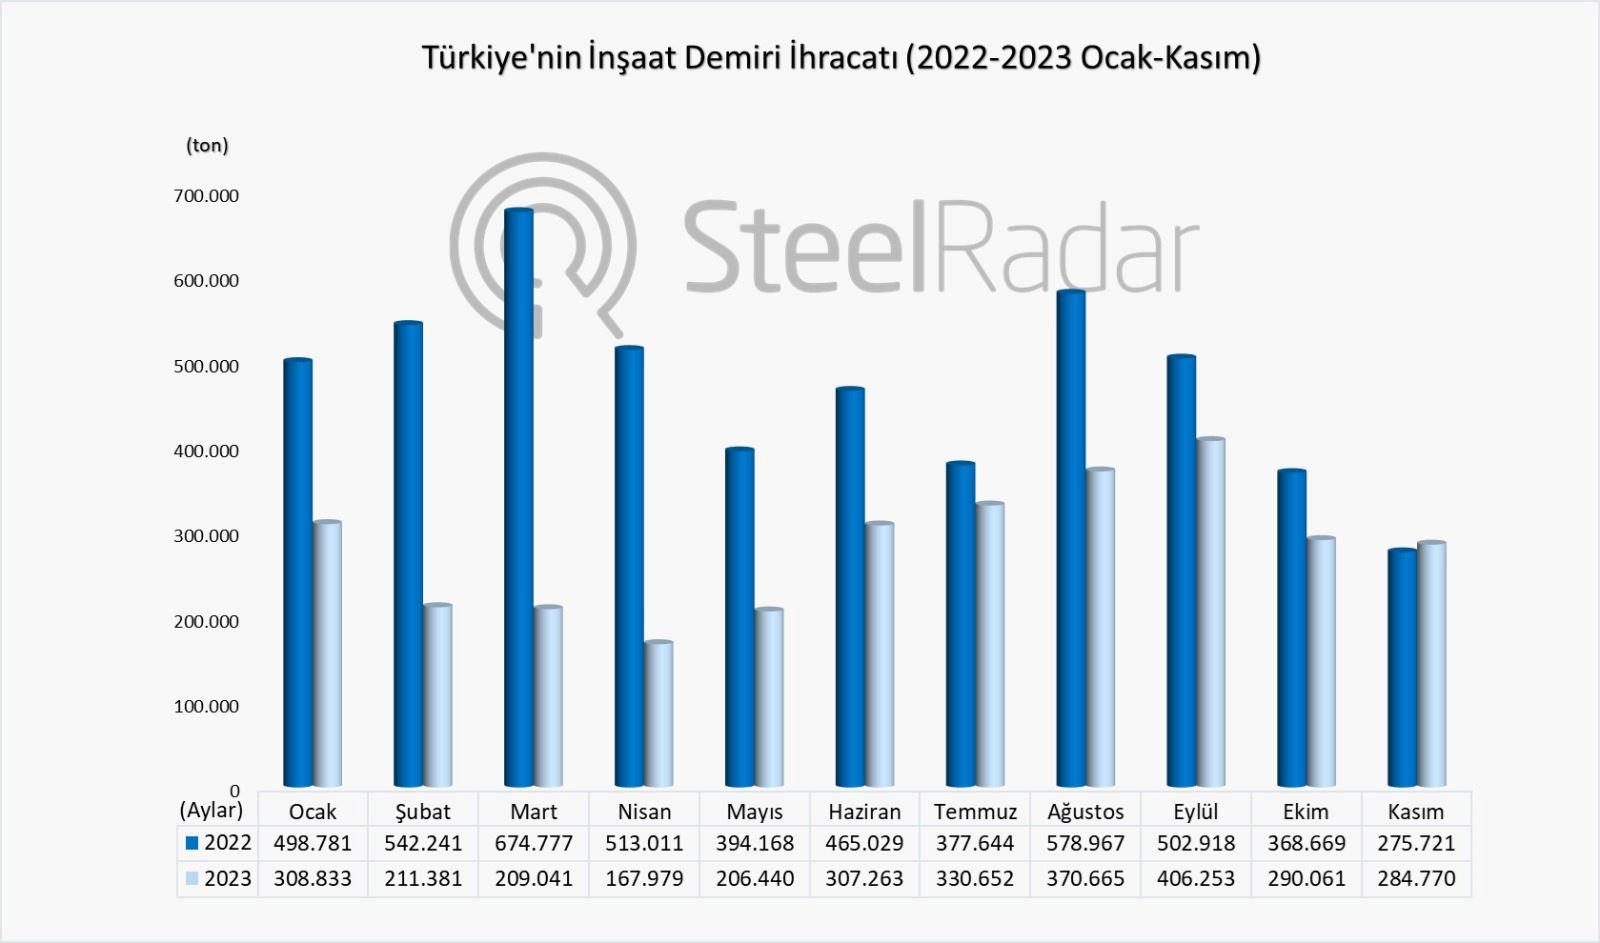  Türkiye'nin inşaat demiri ihracatı kasım ayında artarken, yıl genelinde azaldı 